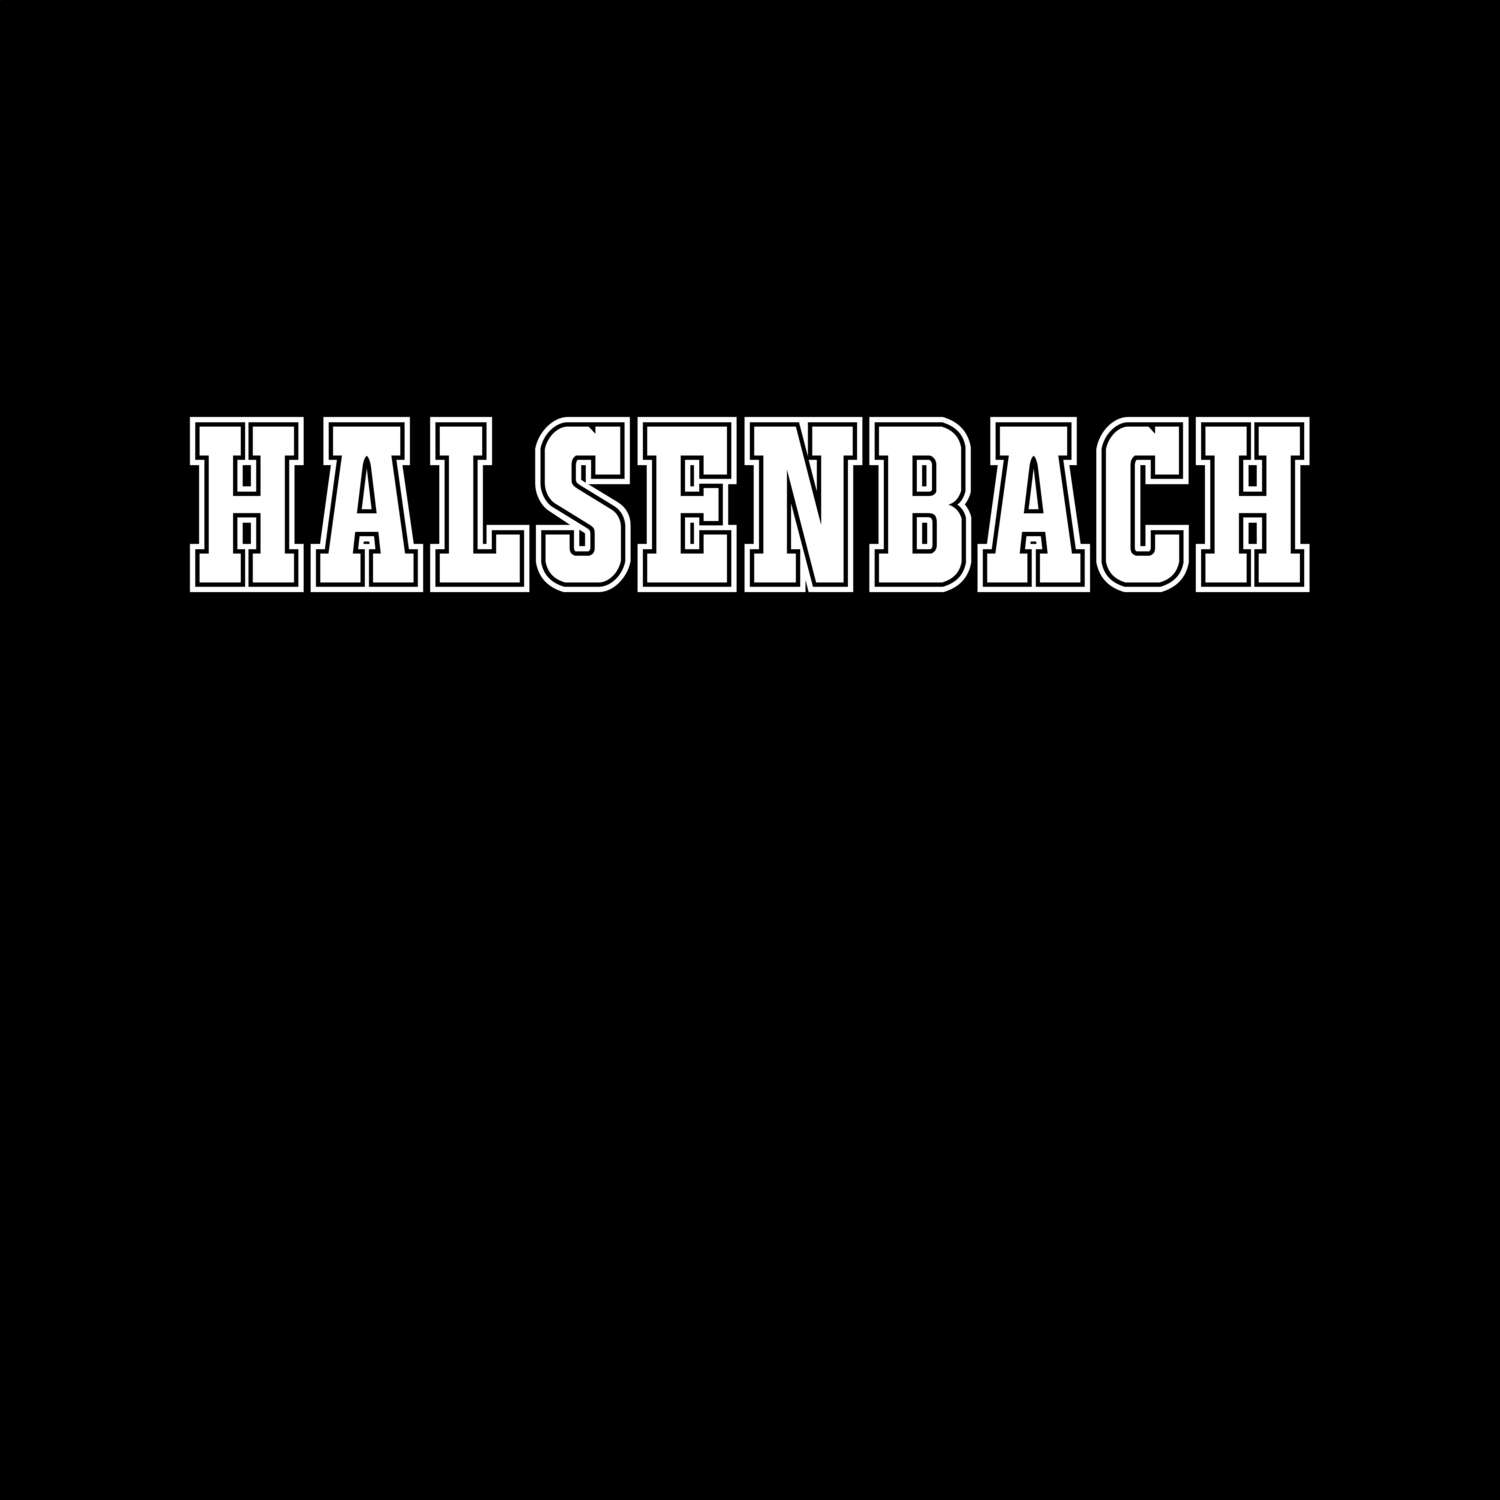 Halsenbach T-Shirt »Classic«